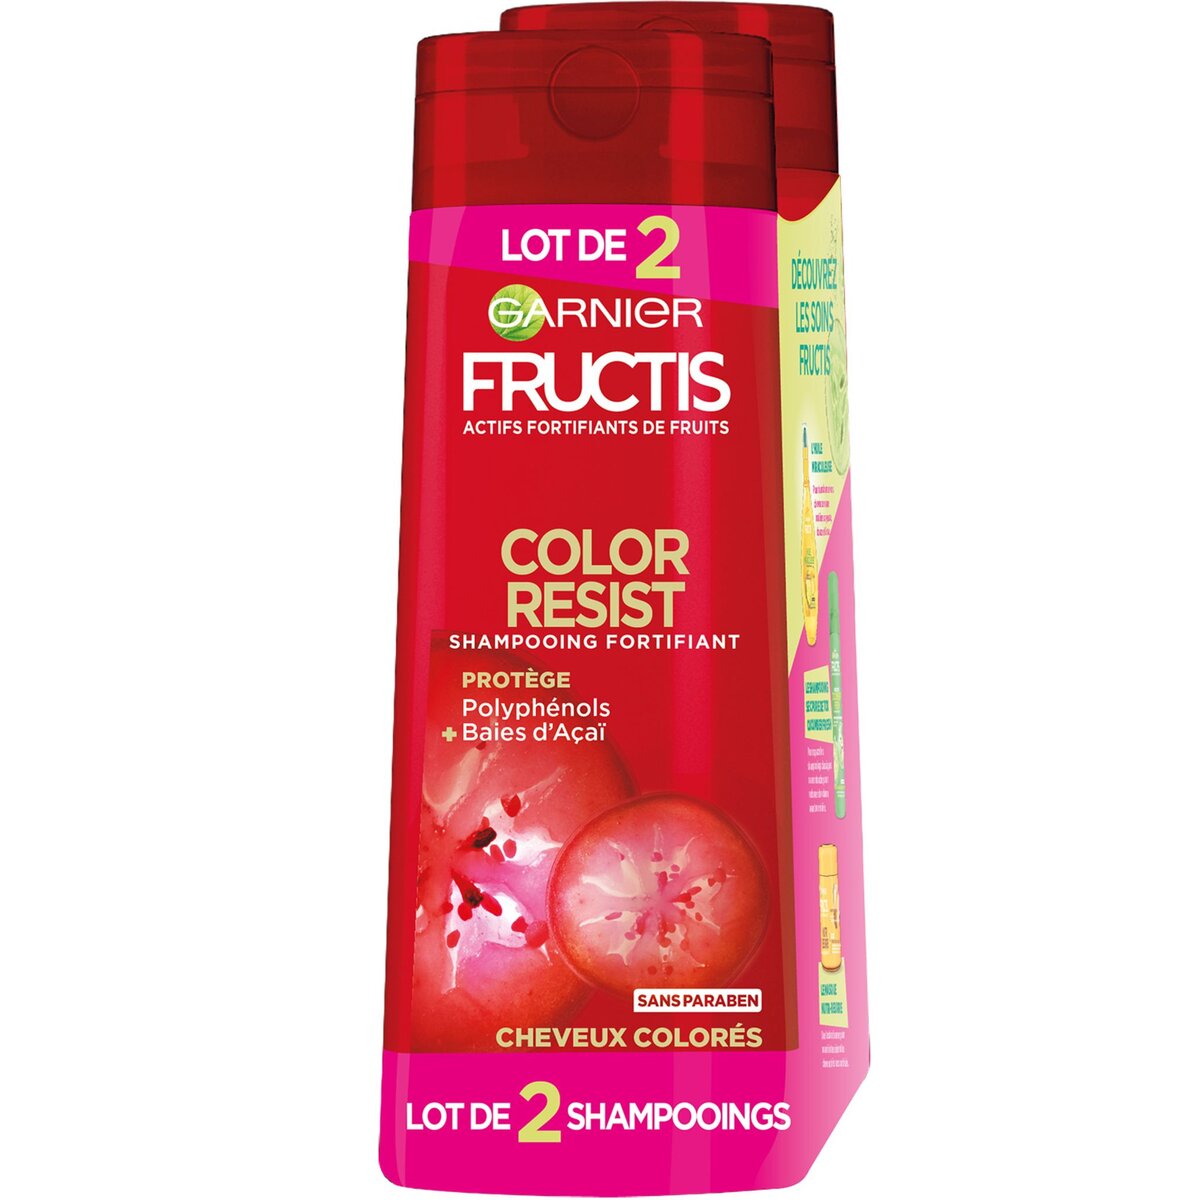 FRUCTIS Shampoing fortifiant color resist cheveux colorés 2x250ml